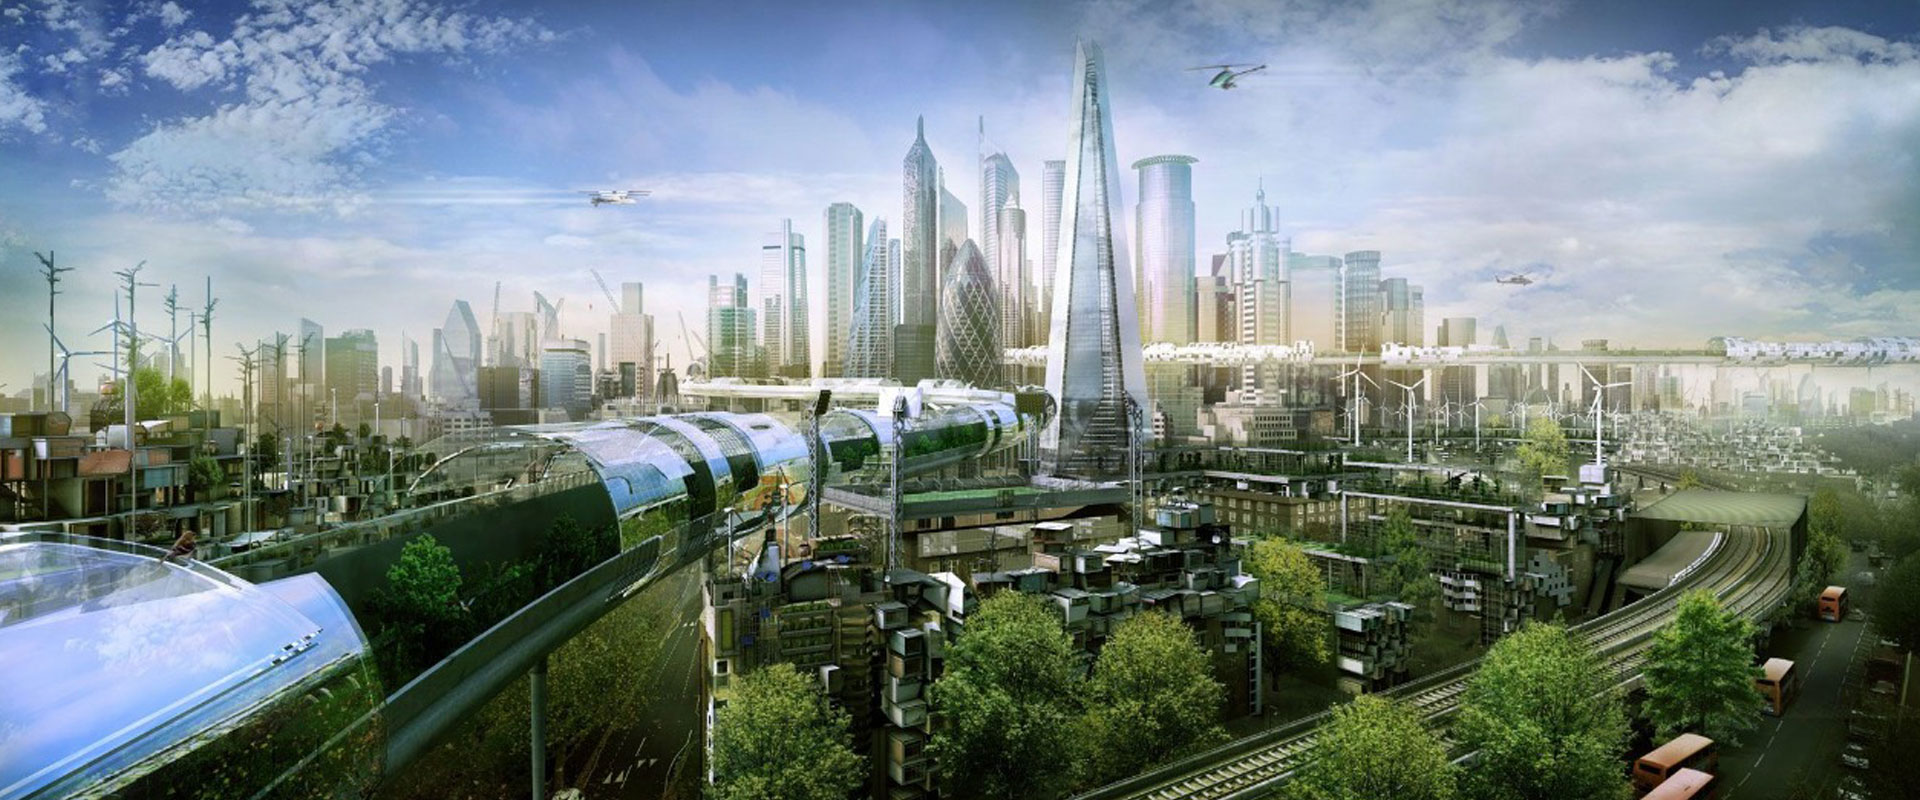 Город будущего экология